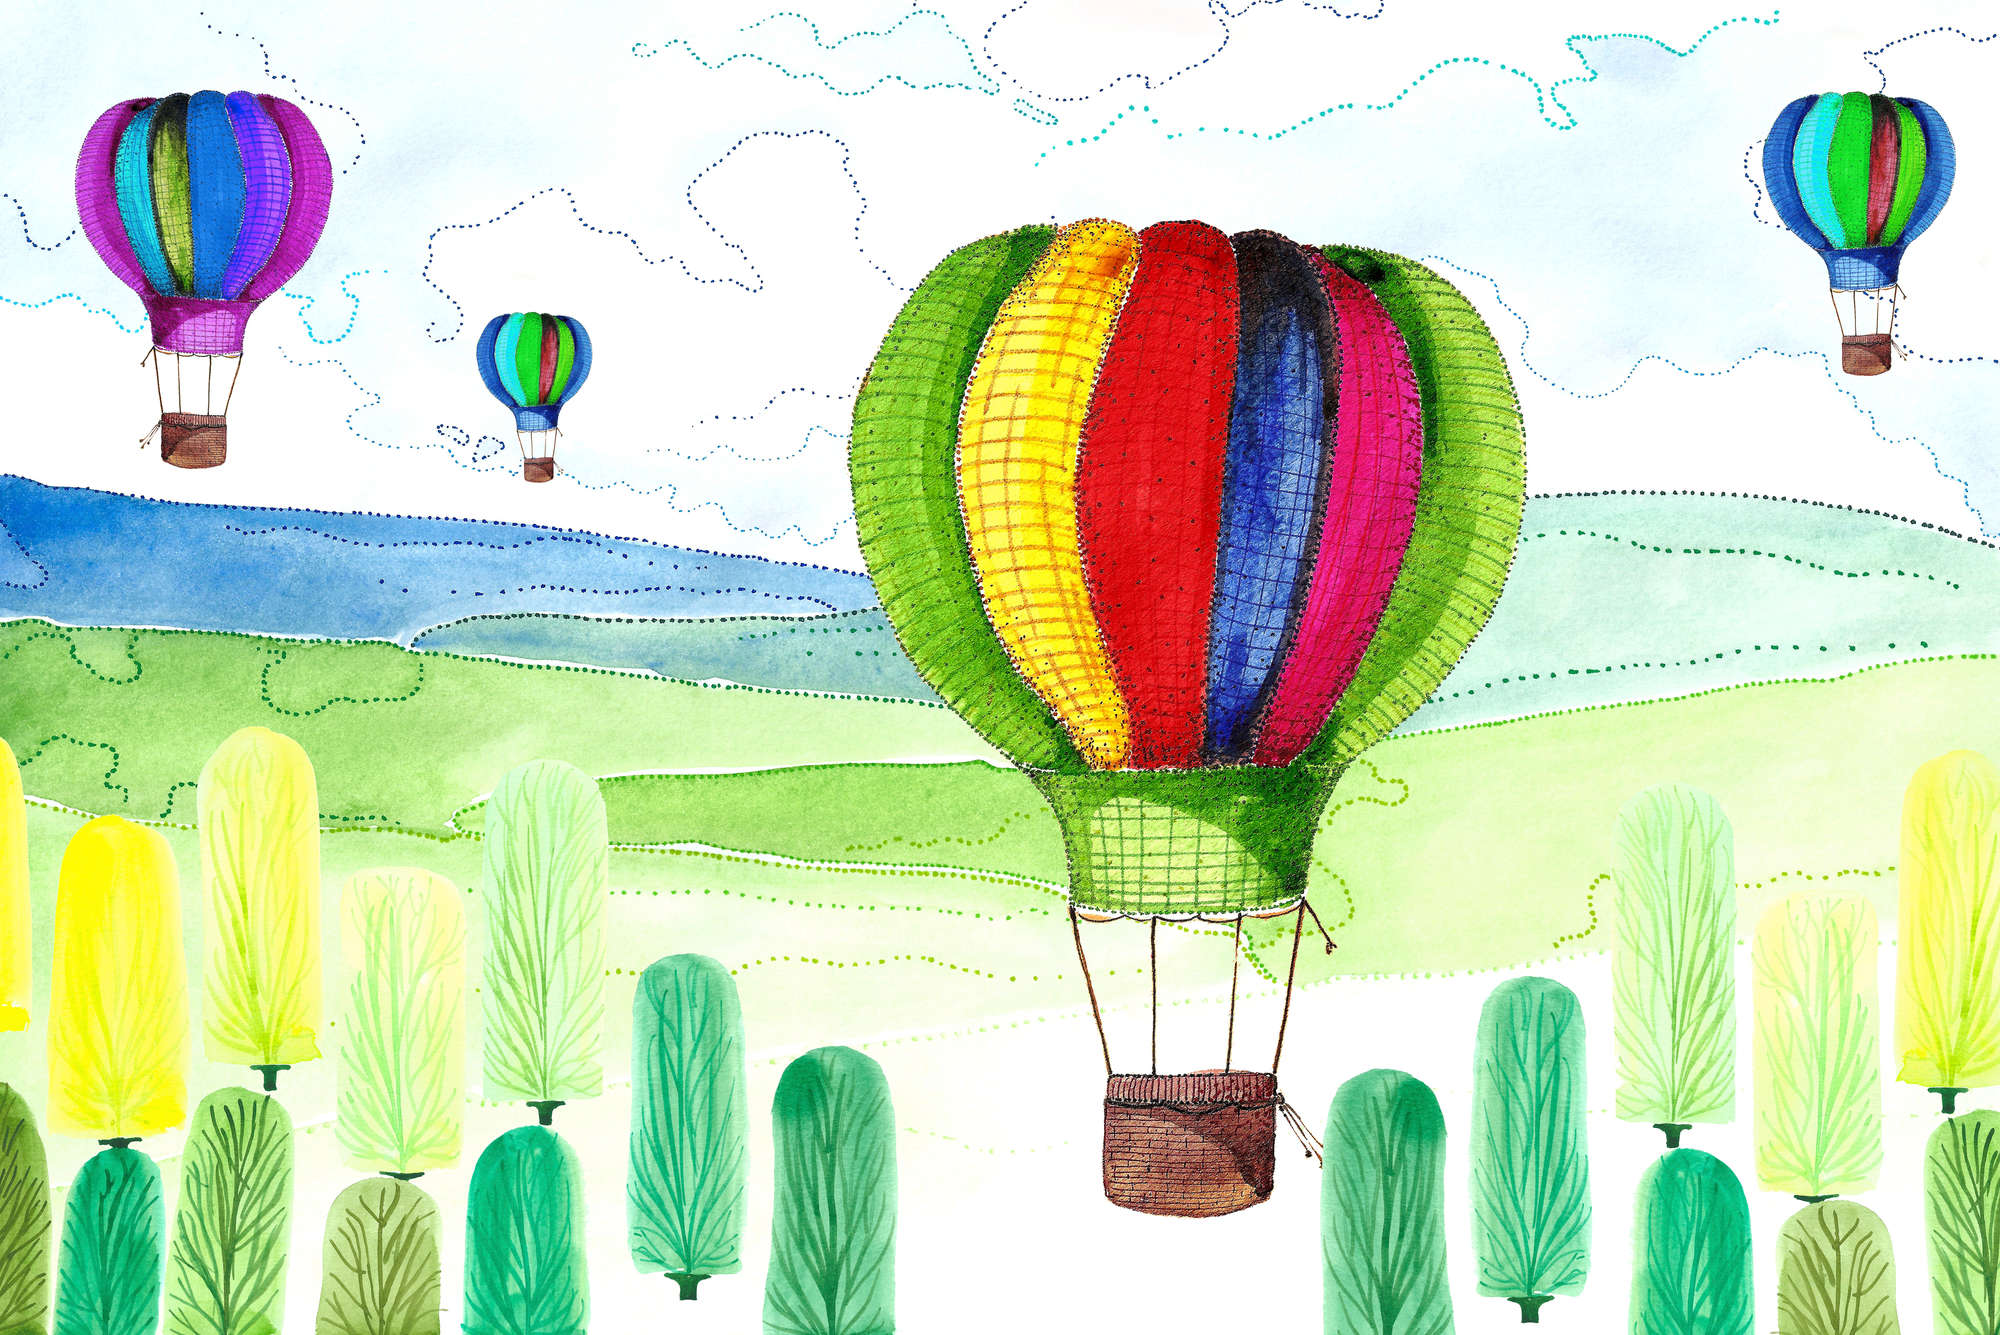             Kinder Fototapete Ballon und Wald Zeichnungen auf Matt Glattvlies
        